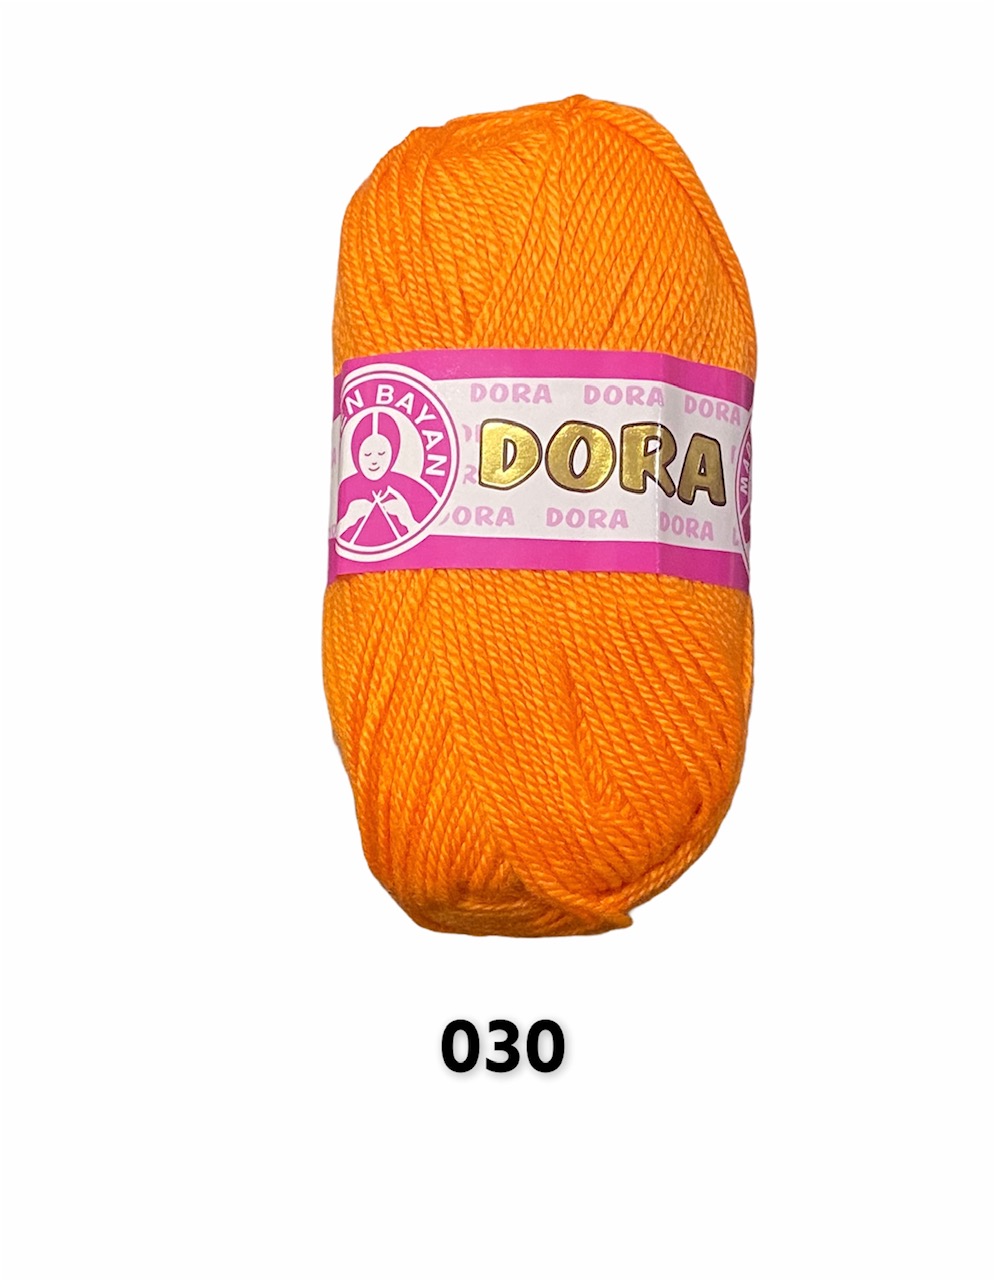 DORA 030, 100g